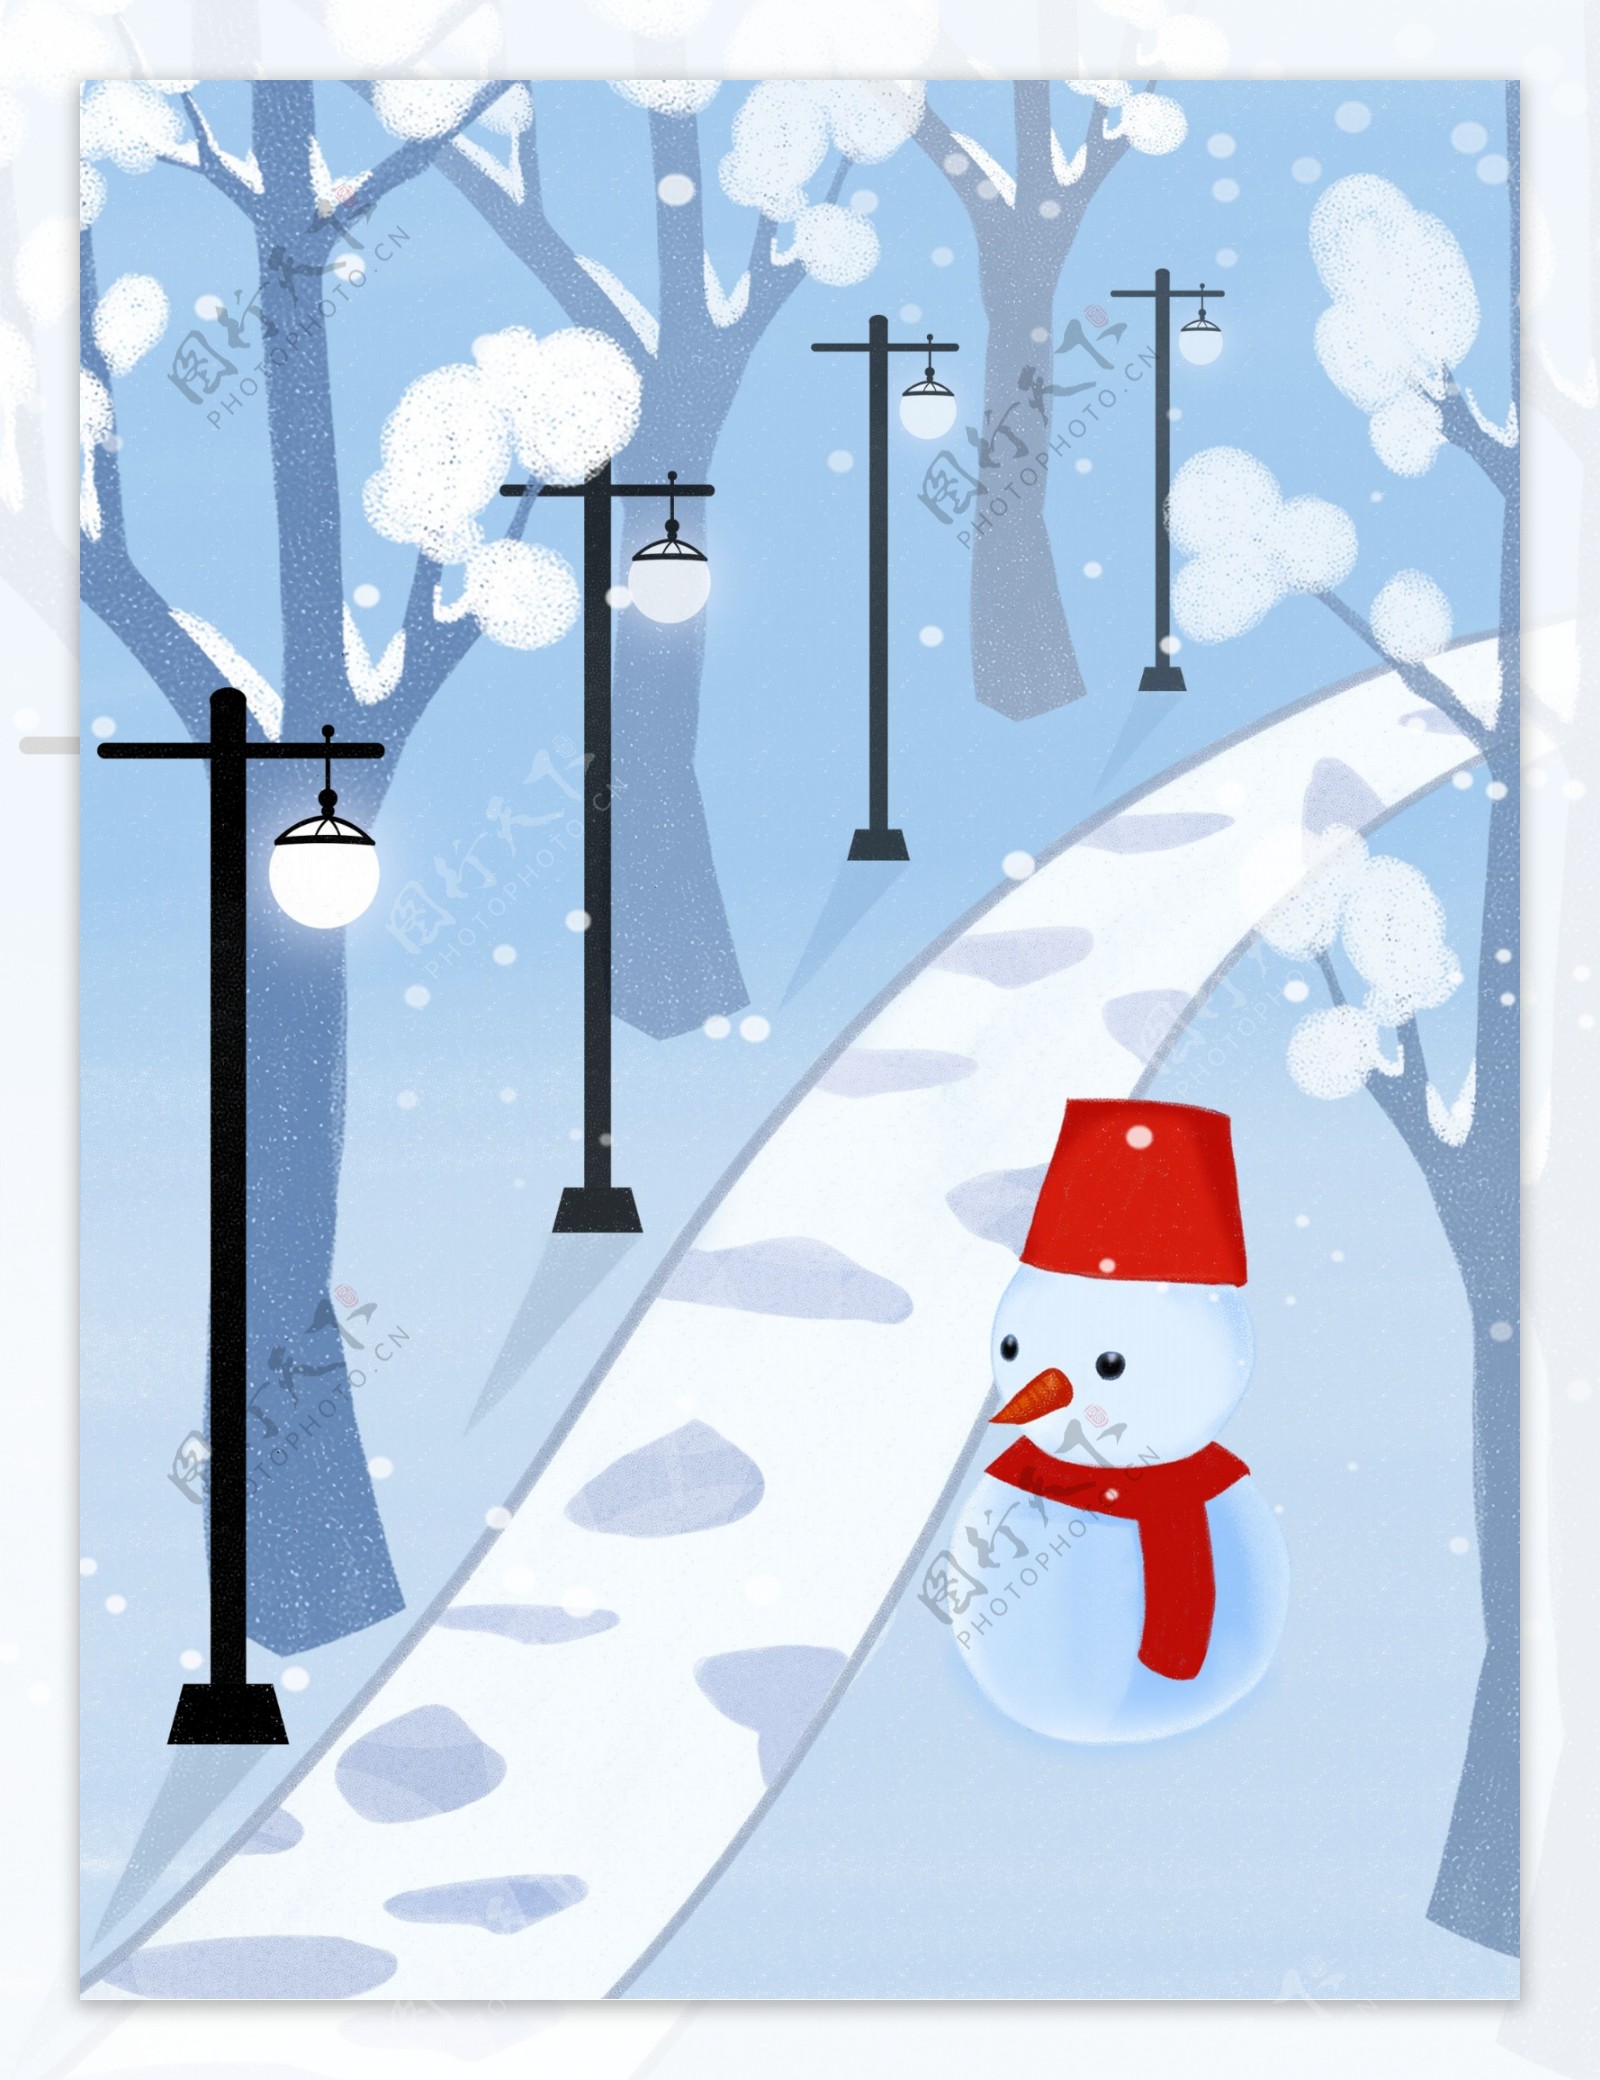 手绘路灯下的雪人冬季背景素材